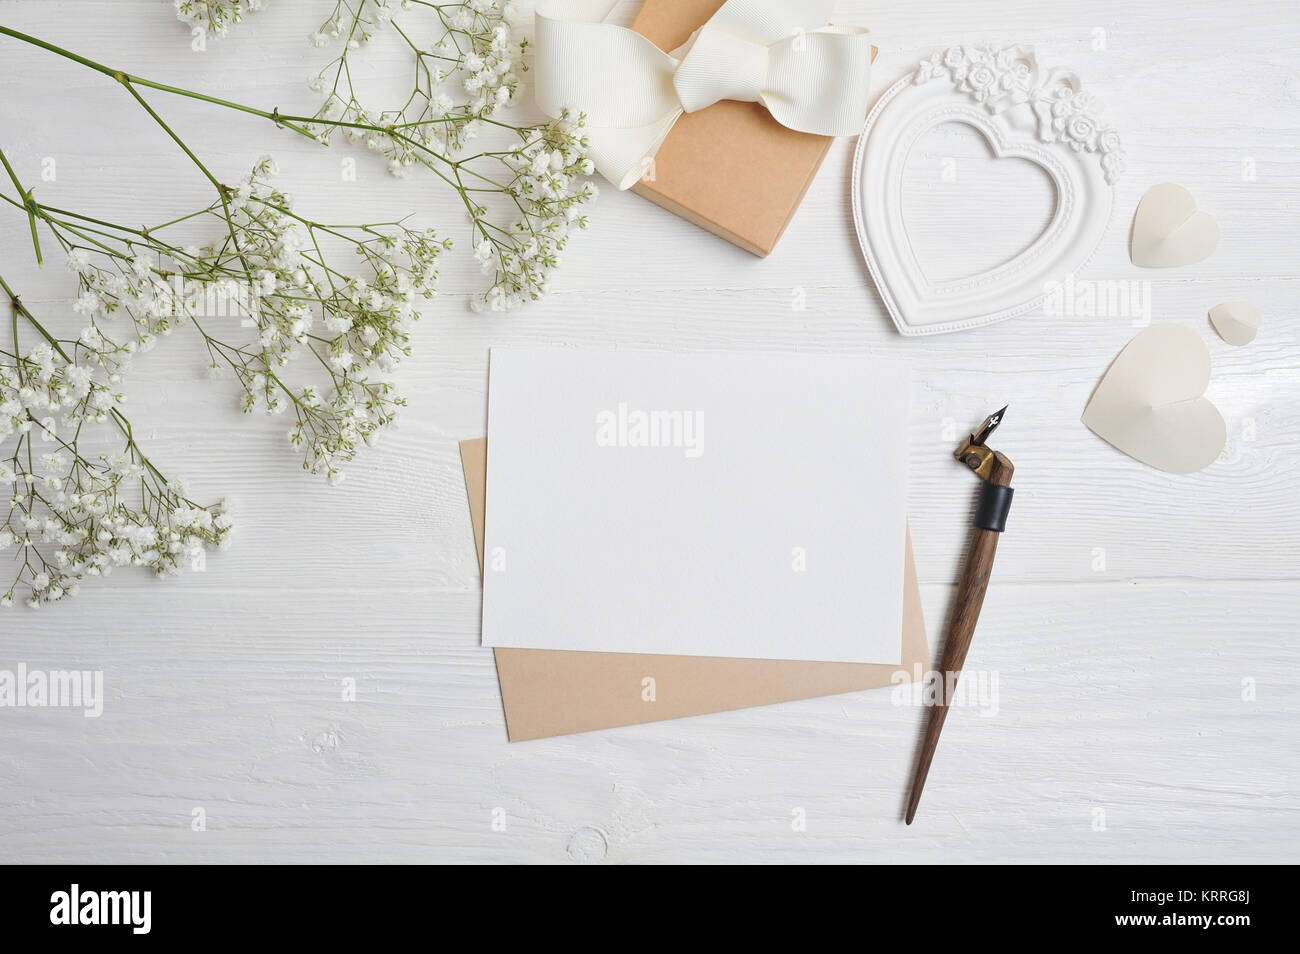 Immersive lettre avec un stylo calligraphique carte de souhaits pour la Saint-Valentin dans un style rustique avec place pour votre texte, mise à plat, vue d'en haut photo. Banque D'Images